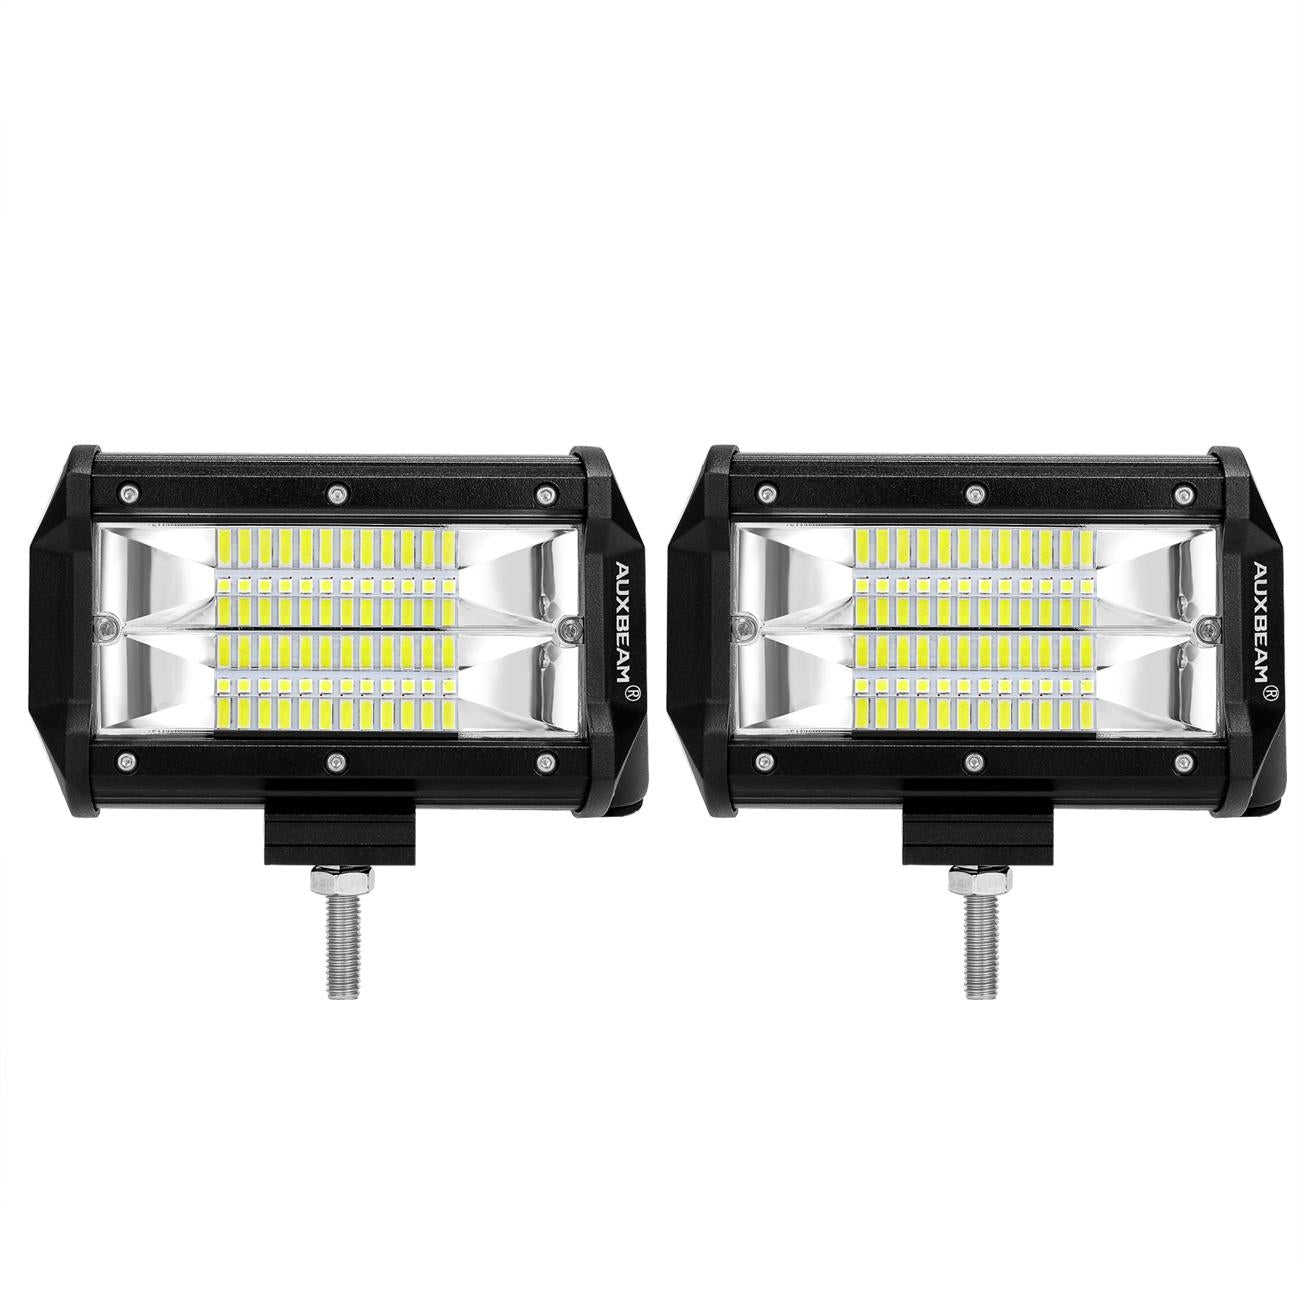 (2pcs/set) Dual Row Straight LED Light Bar for SUV ATV UTV Trucks Pickup Boat